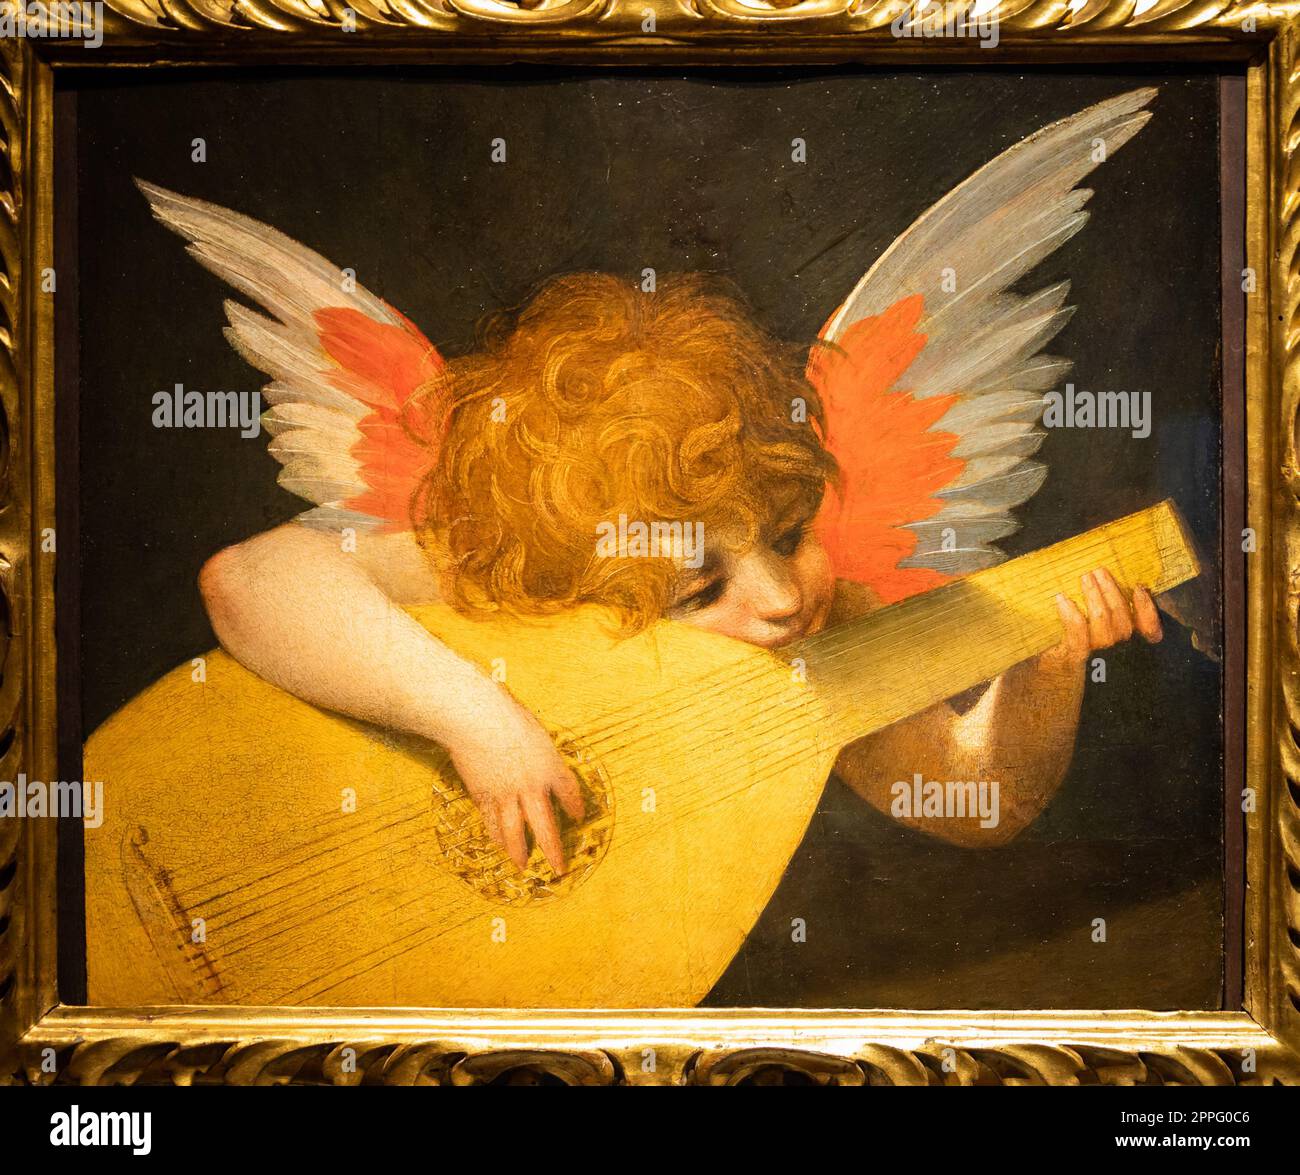 Florenz, Italien - Ca. August 2021. Engel spielt Laute, c.1521 - Öl auf Platte. Stockfoto